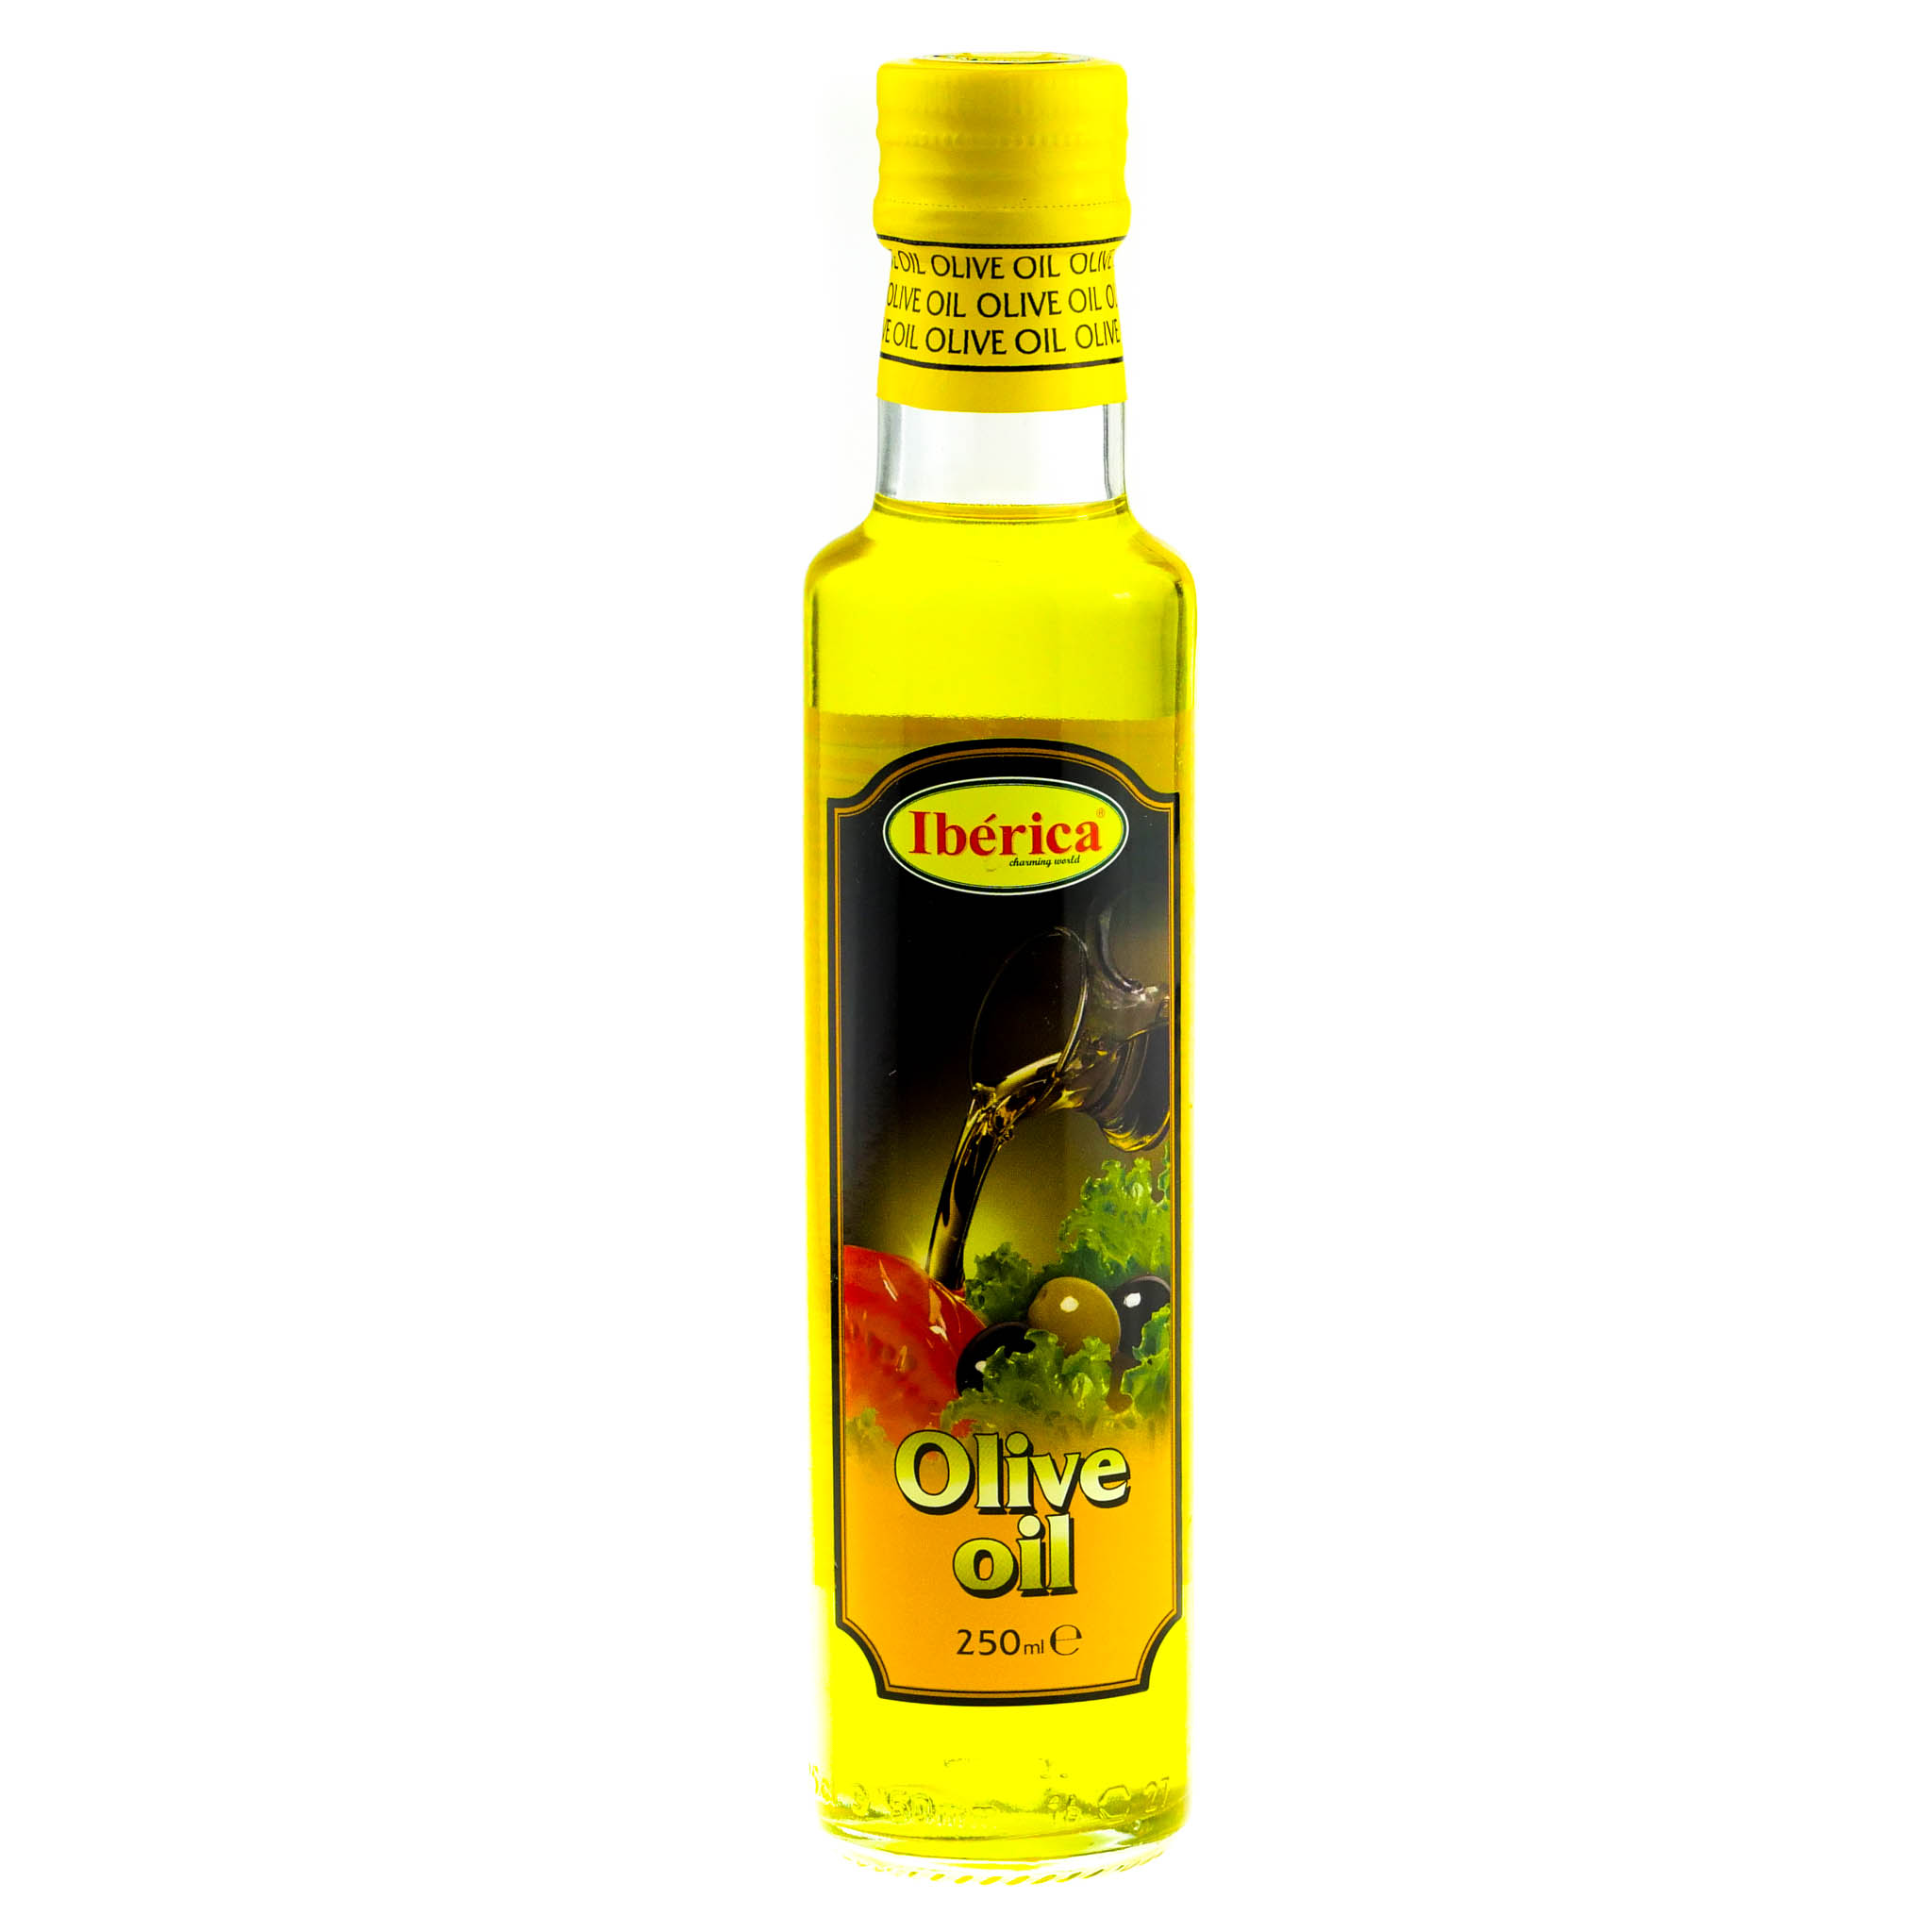 Интернет магазин оливкового масло. Иберика оливковое масло 250 ml. Рафинированное оливковое масло Иберика. Оливковое масло "Иберика" 0.25л нерафинированное. Olive Oil масло оливковое 250.